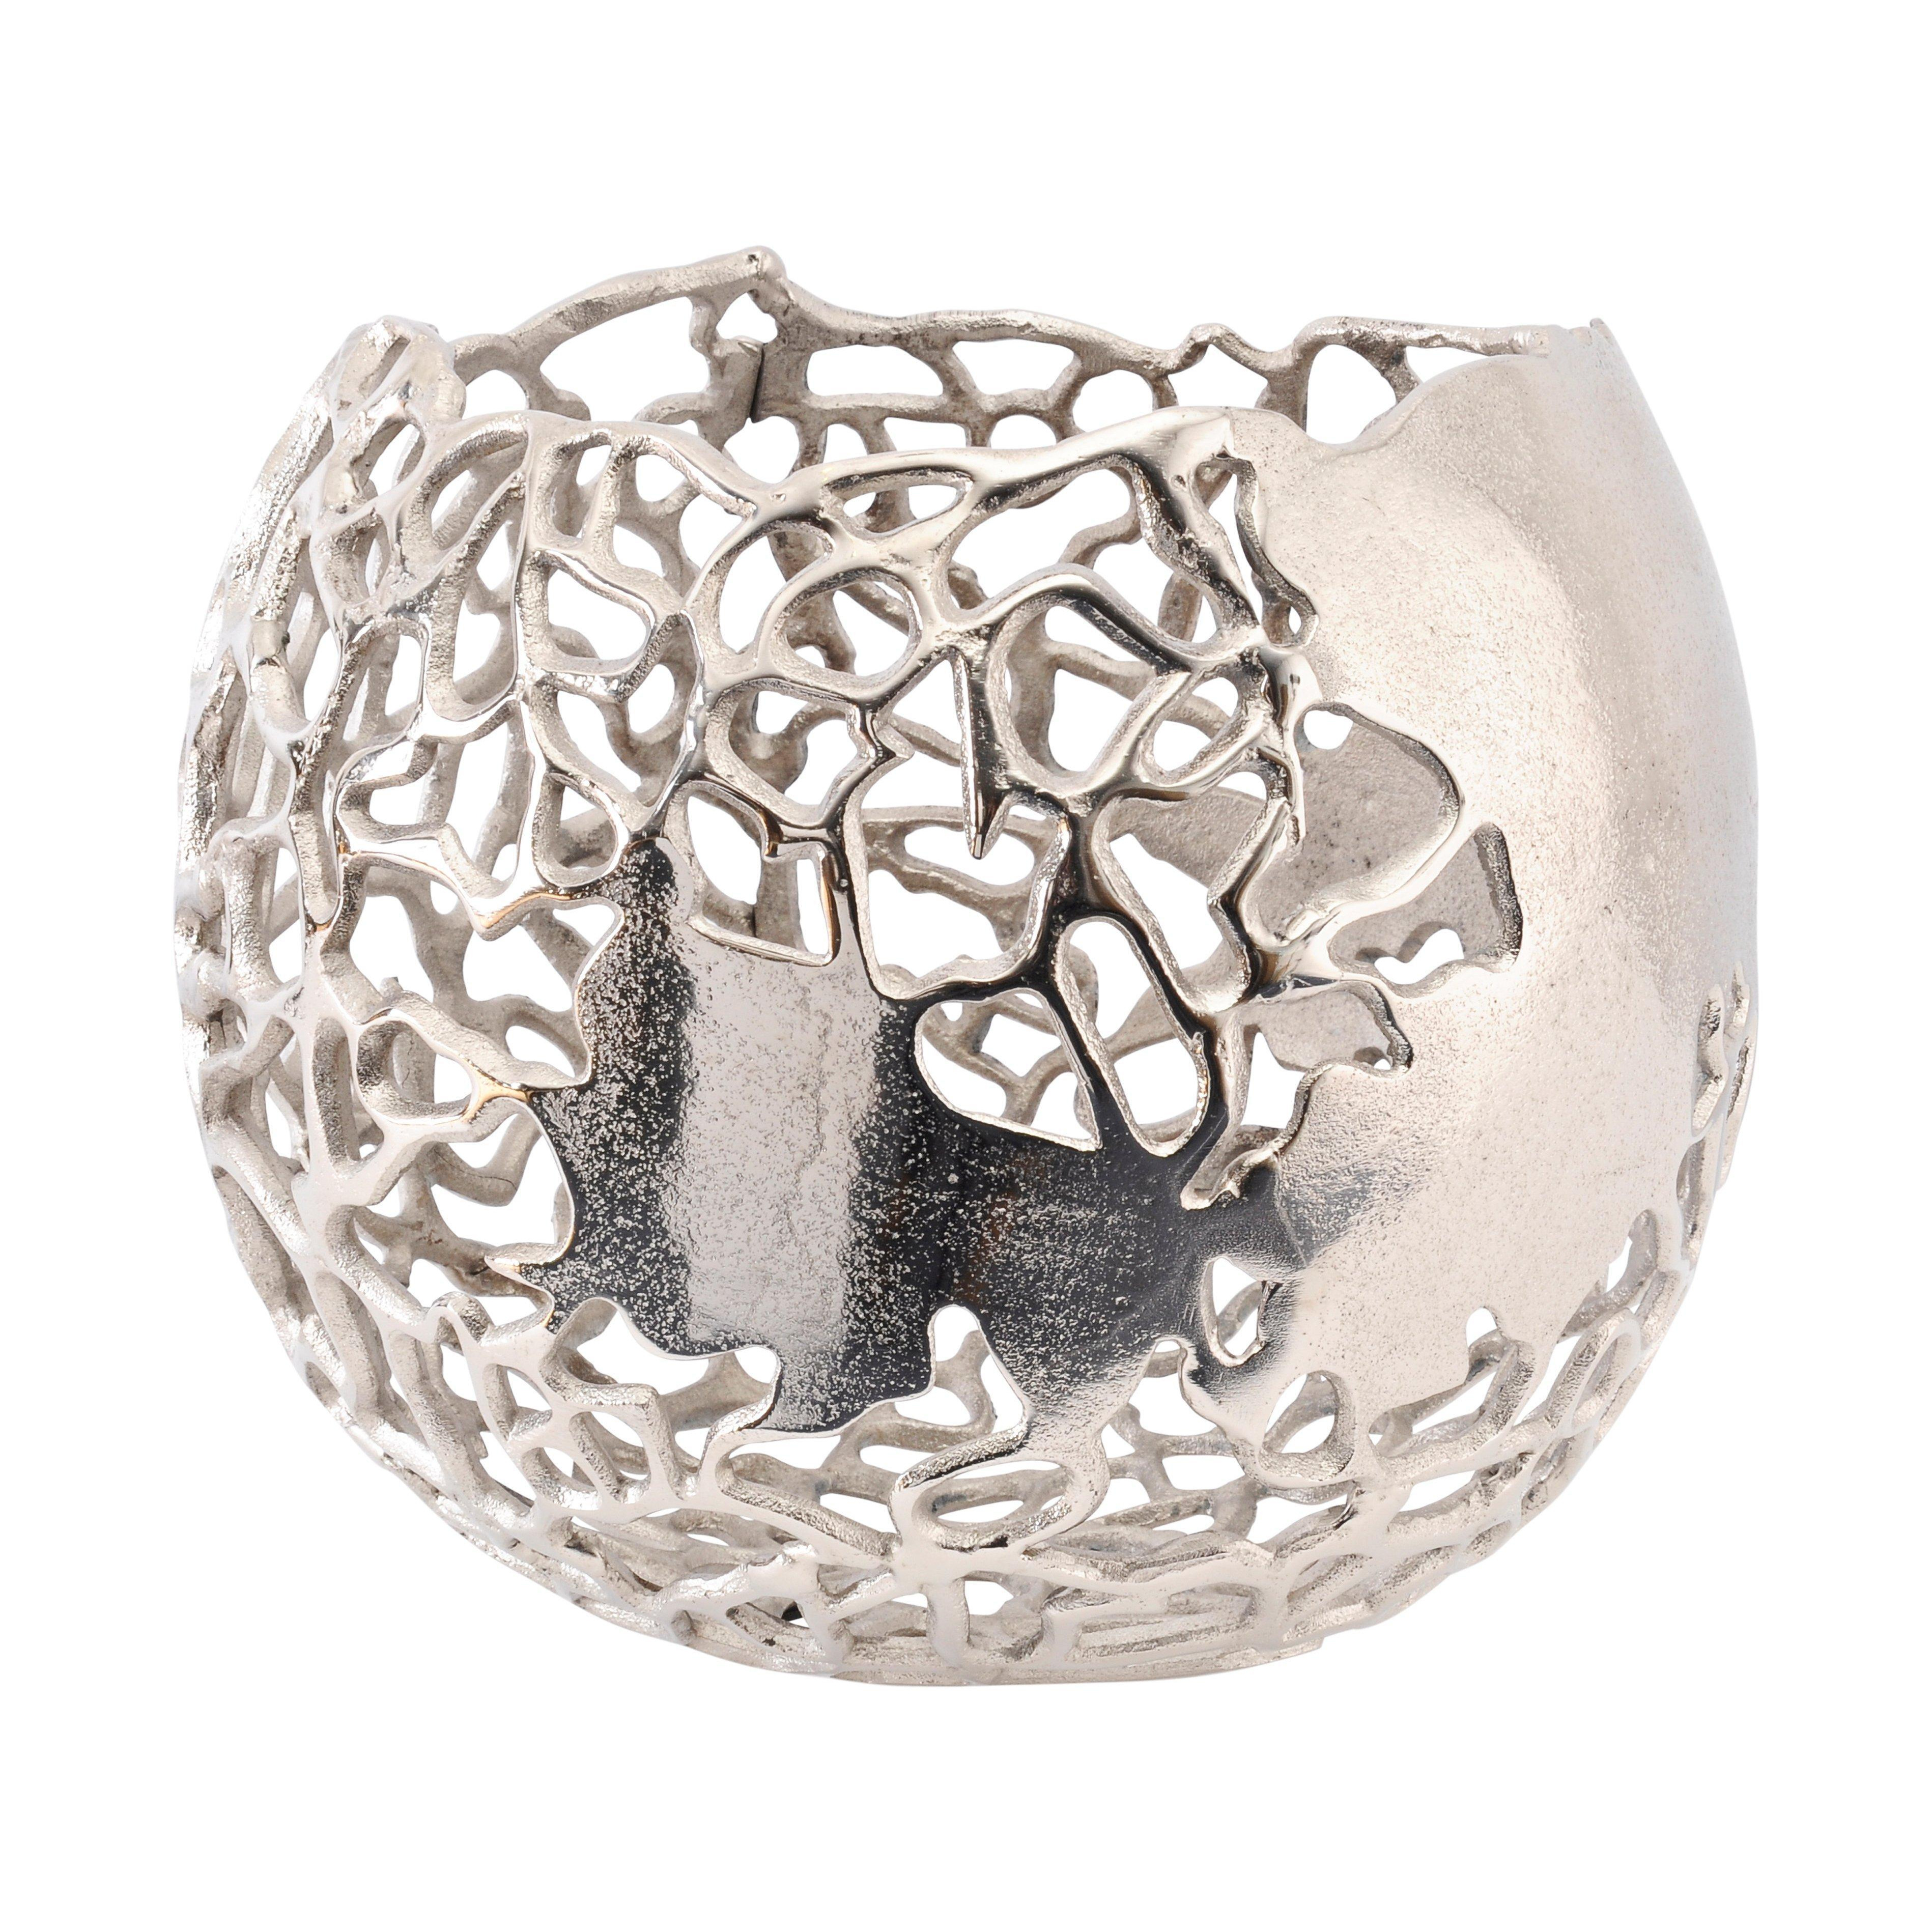 Apo Coral Spherical Aluminium Vase - image 1